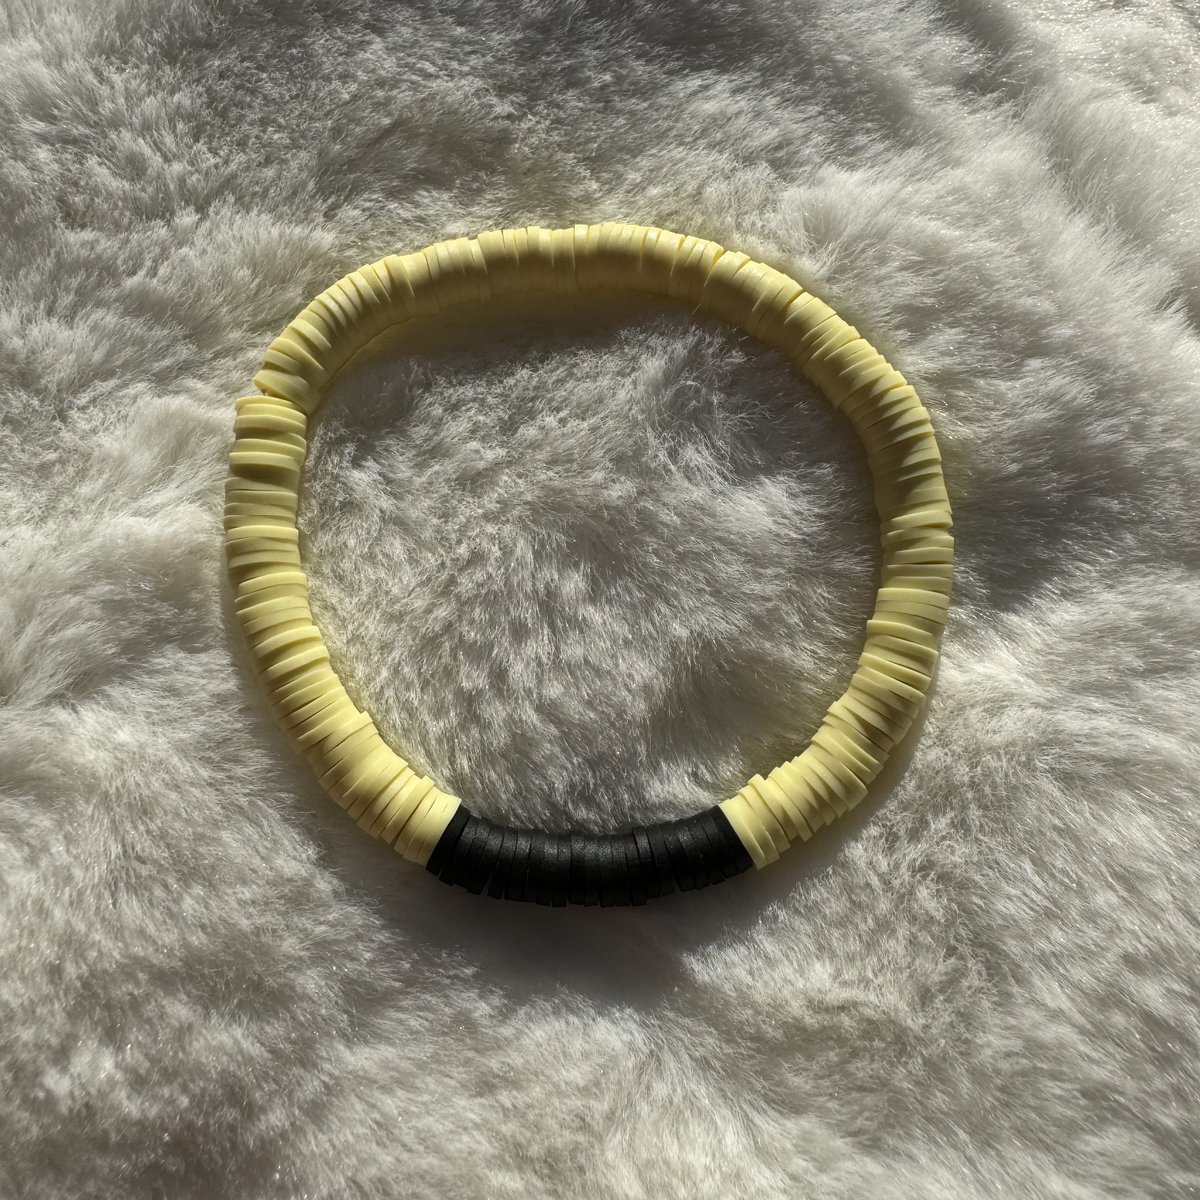 Black and Yellow Heishi Clay Bead Bracelet #2

aldesignsbyashley.etsy.com

#etsyshop #etsyseller #etsyhandmade #etsy #handmade #handmadejewelry #handmadeearrings #earrings #handmadeearringsforsale #earringstyle #etsygifts #etsysellersofinstagram #jewelry #jewelrydesign